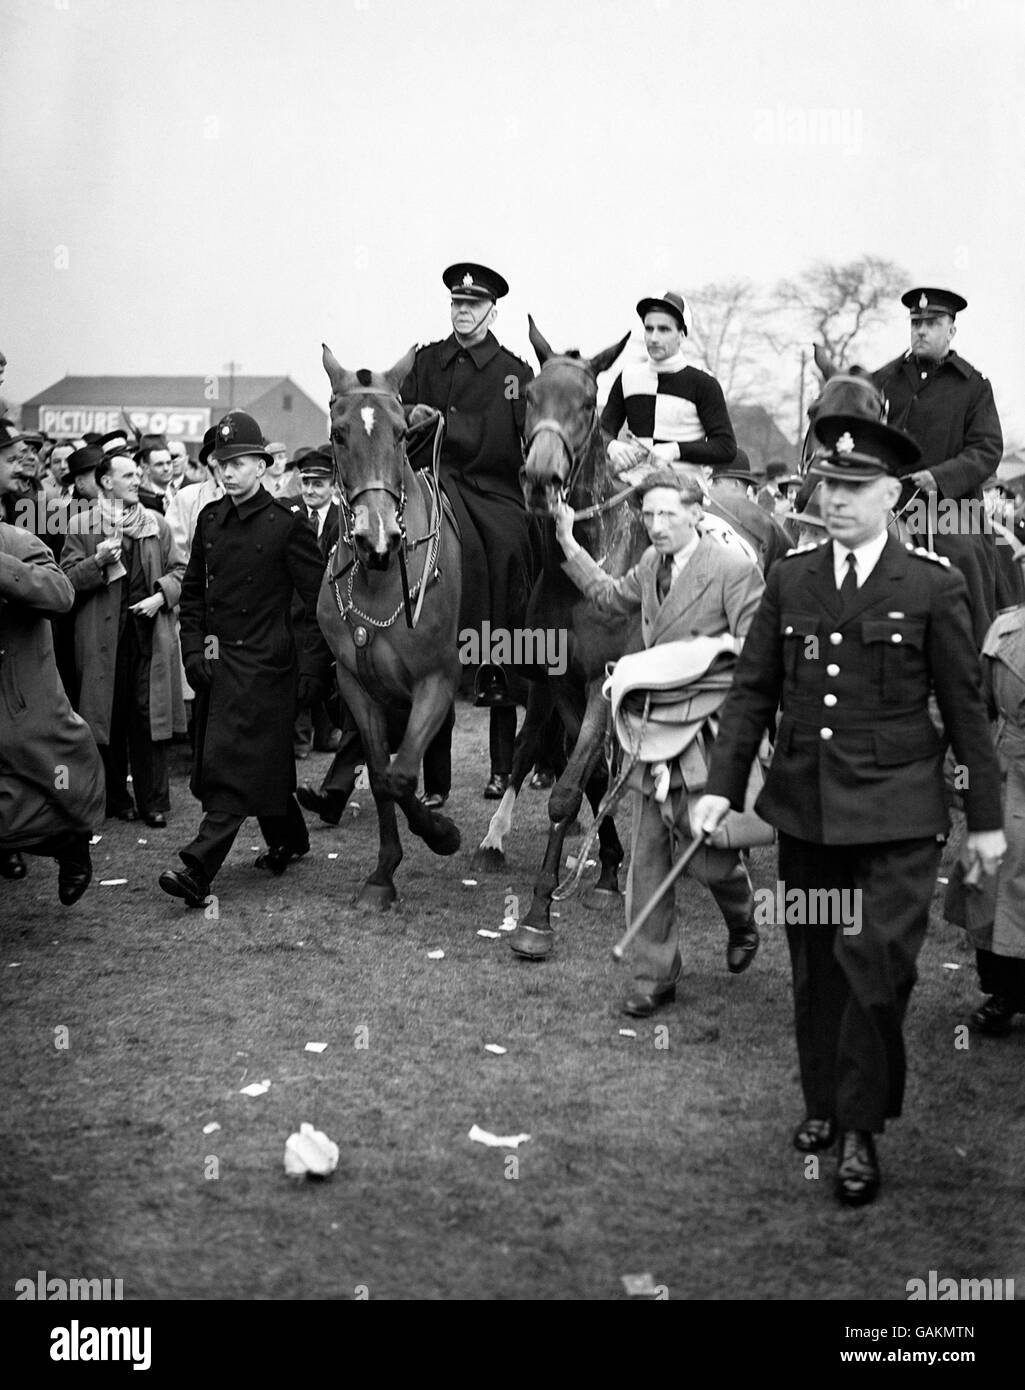 Corse di cavalli - Il Grand National - L'Aintree - 1949 Foto Stock